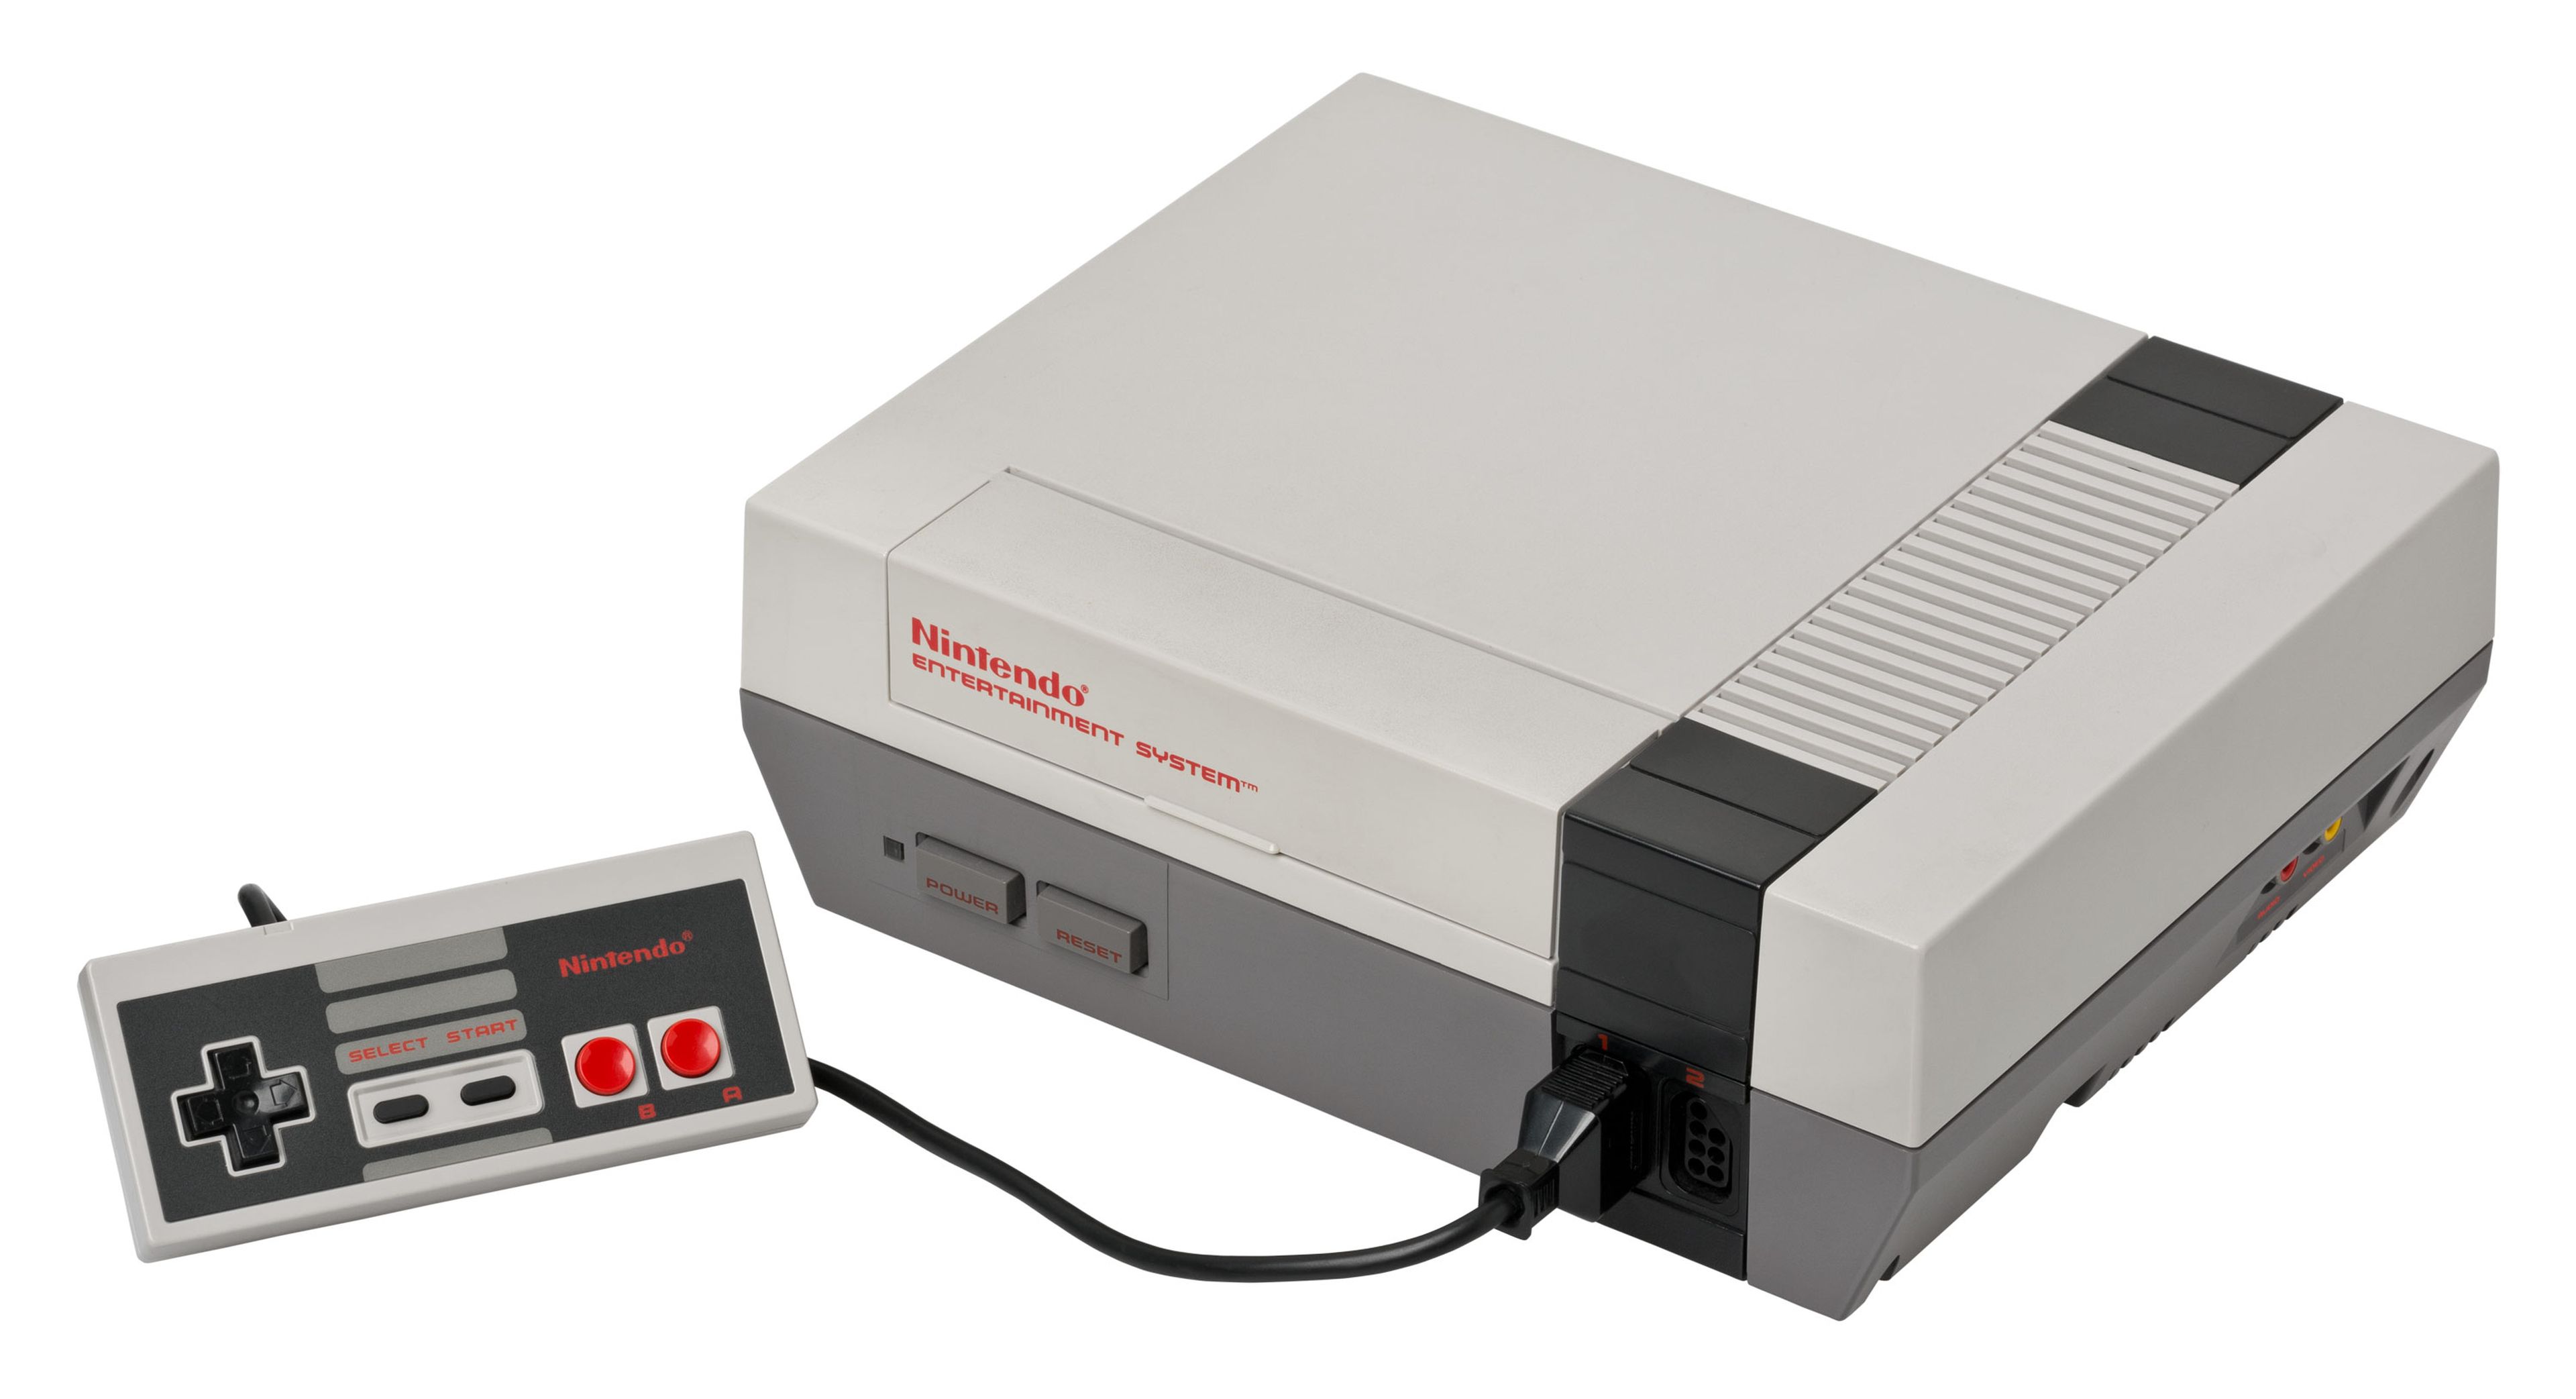 Muchos os iniciaríais en el mundo del videojuego con NES. En mi caso, fue un maravilloso descubrimiento. Lejos de las complicaciones de or ordenadores, en consolas bastaba con meter el cartucho y pulsar Power para jugar. Sin cargas ni esperas.